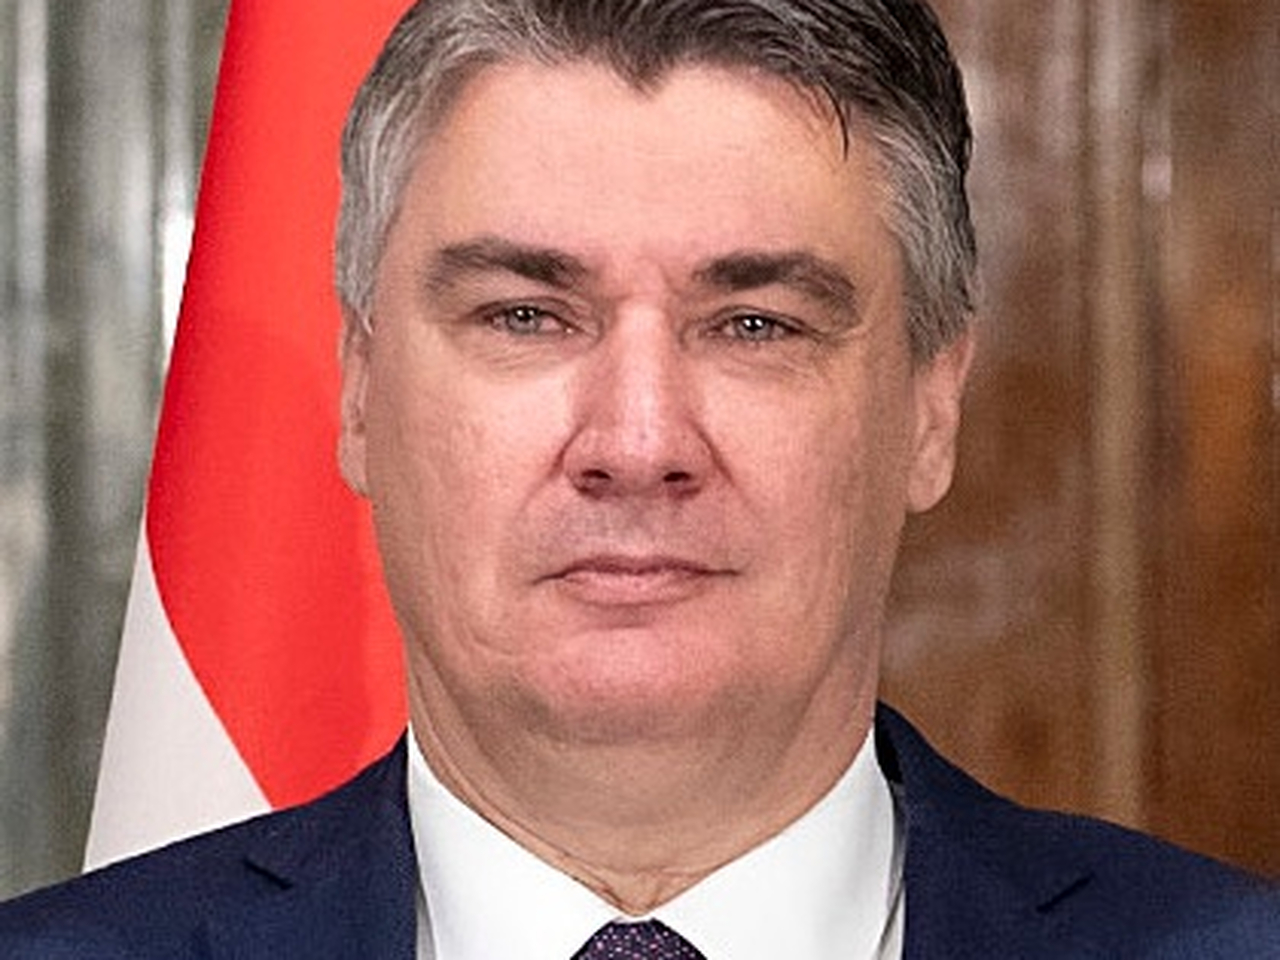 зоран миланович президент хорватии